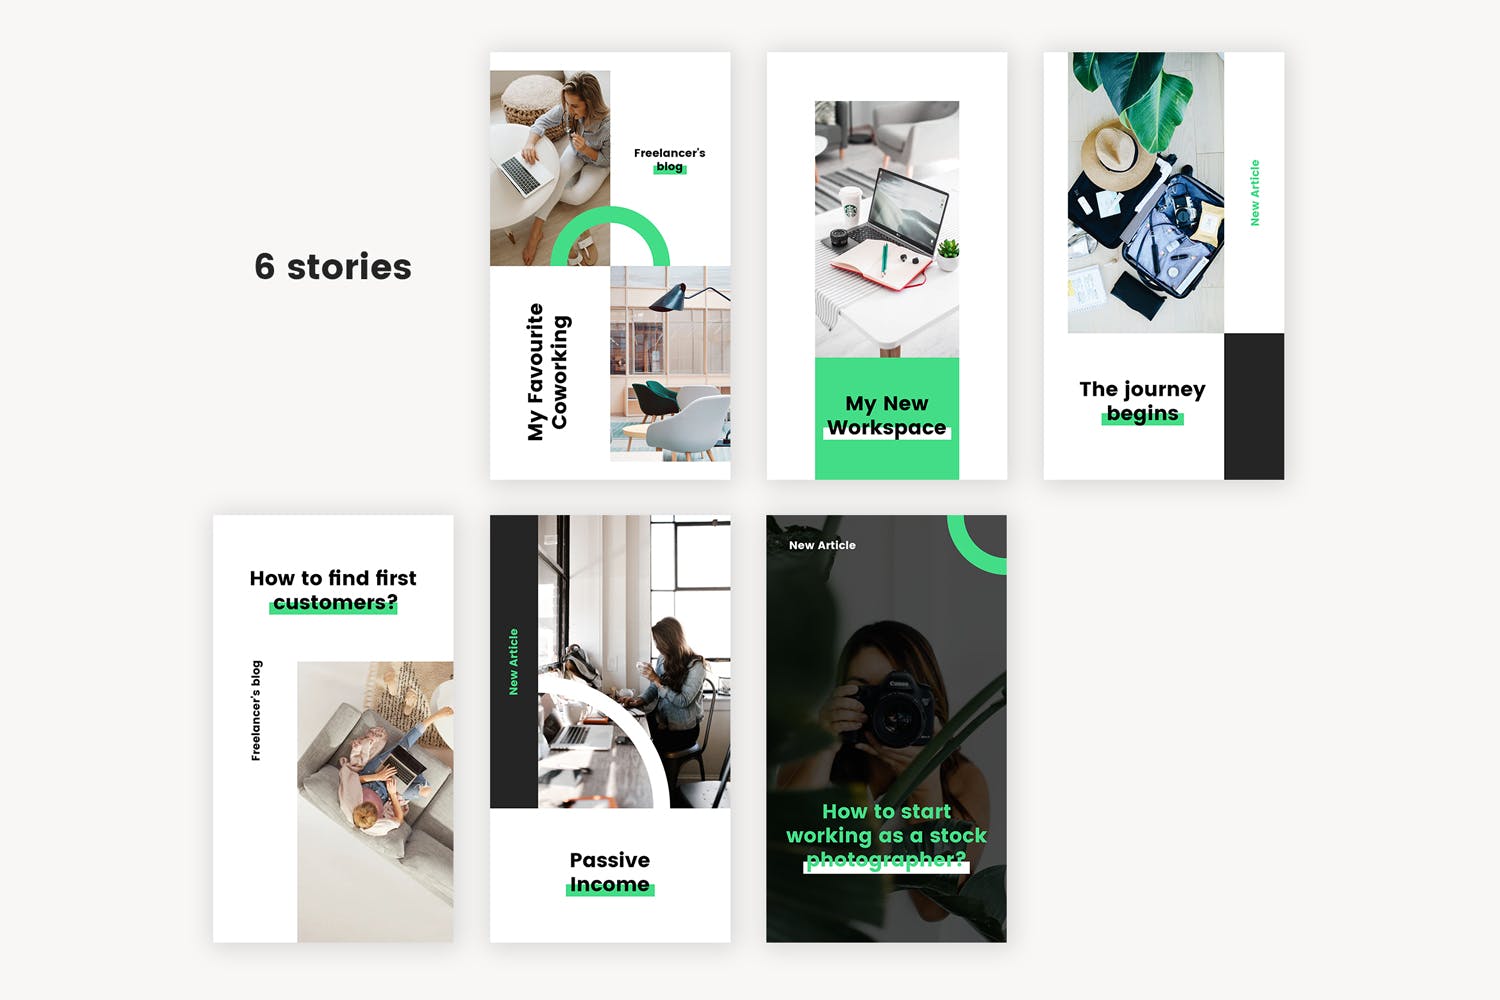 居家办公主题推广Instagram社交媒体品牌故事设计模板 Instagram Stories Kit (Vol.42)设计素材模板